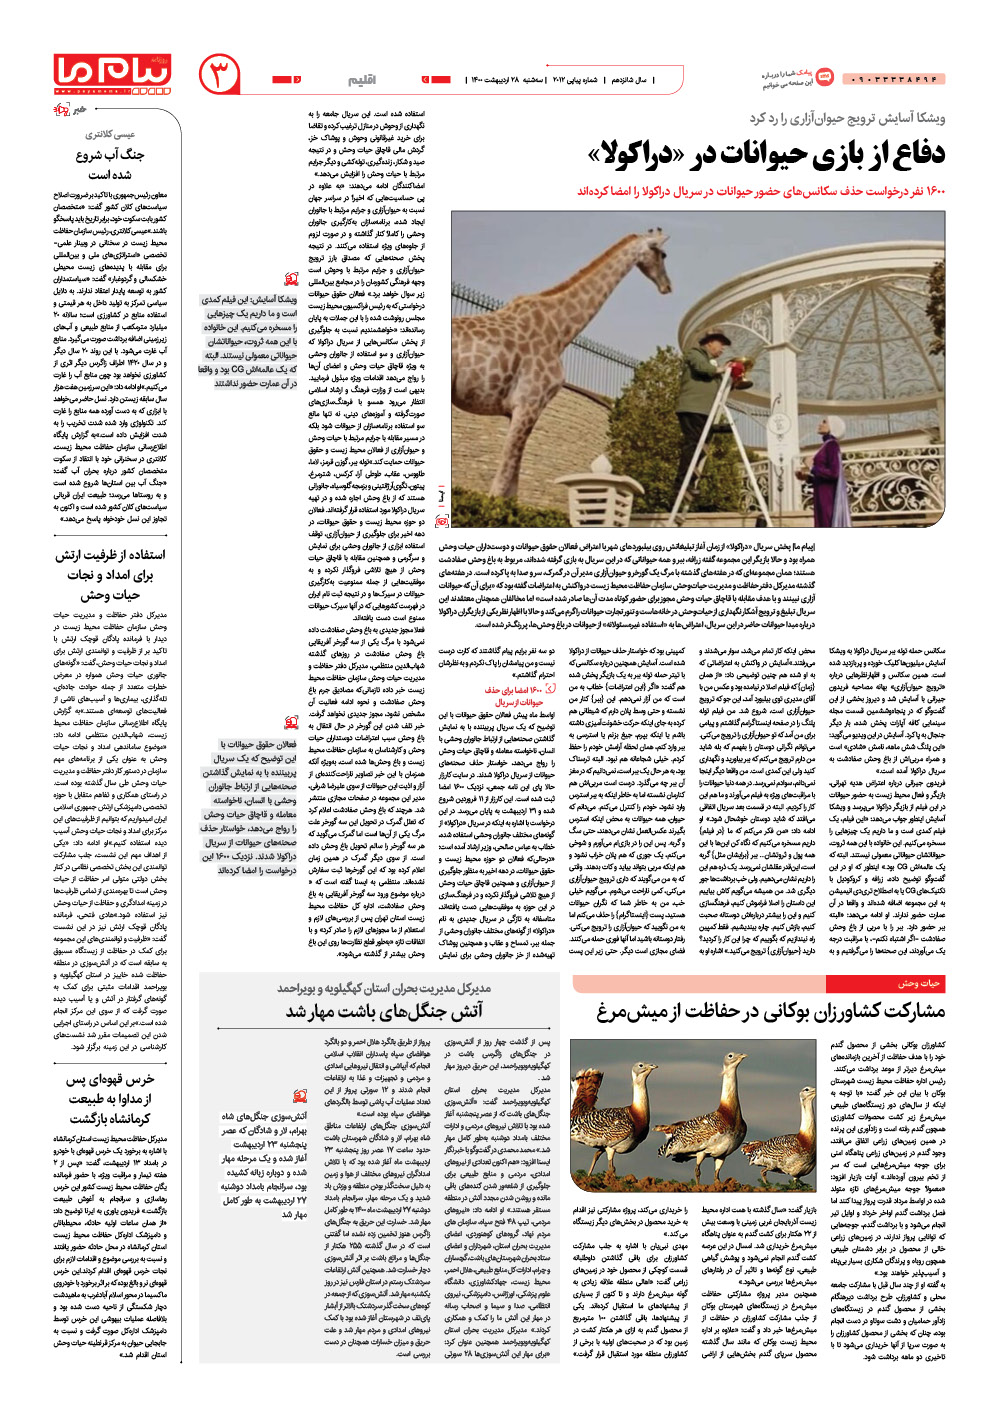 صفحه اقلیم شماره 2012 روزنامه پیام ما